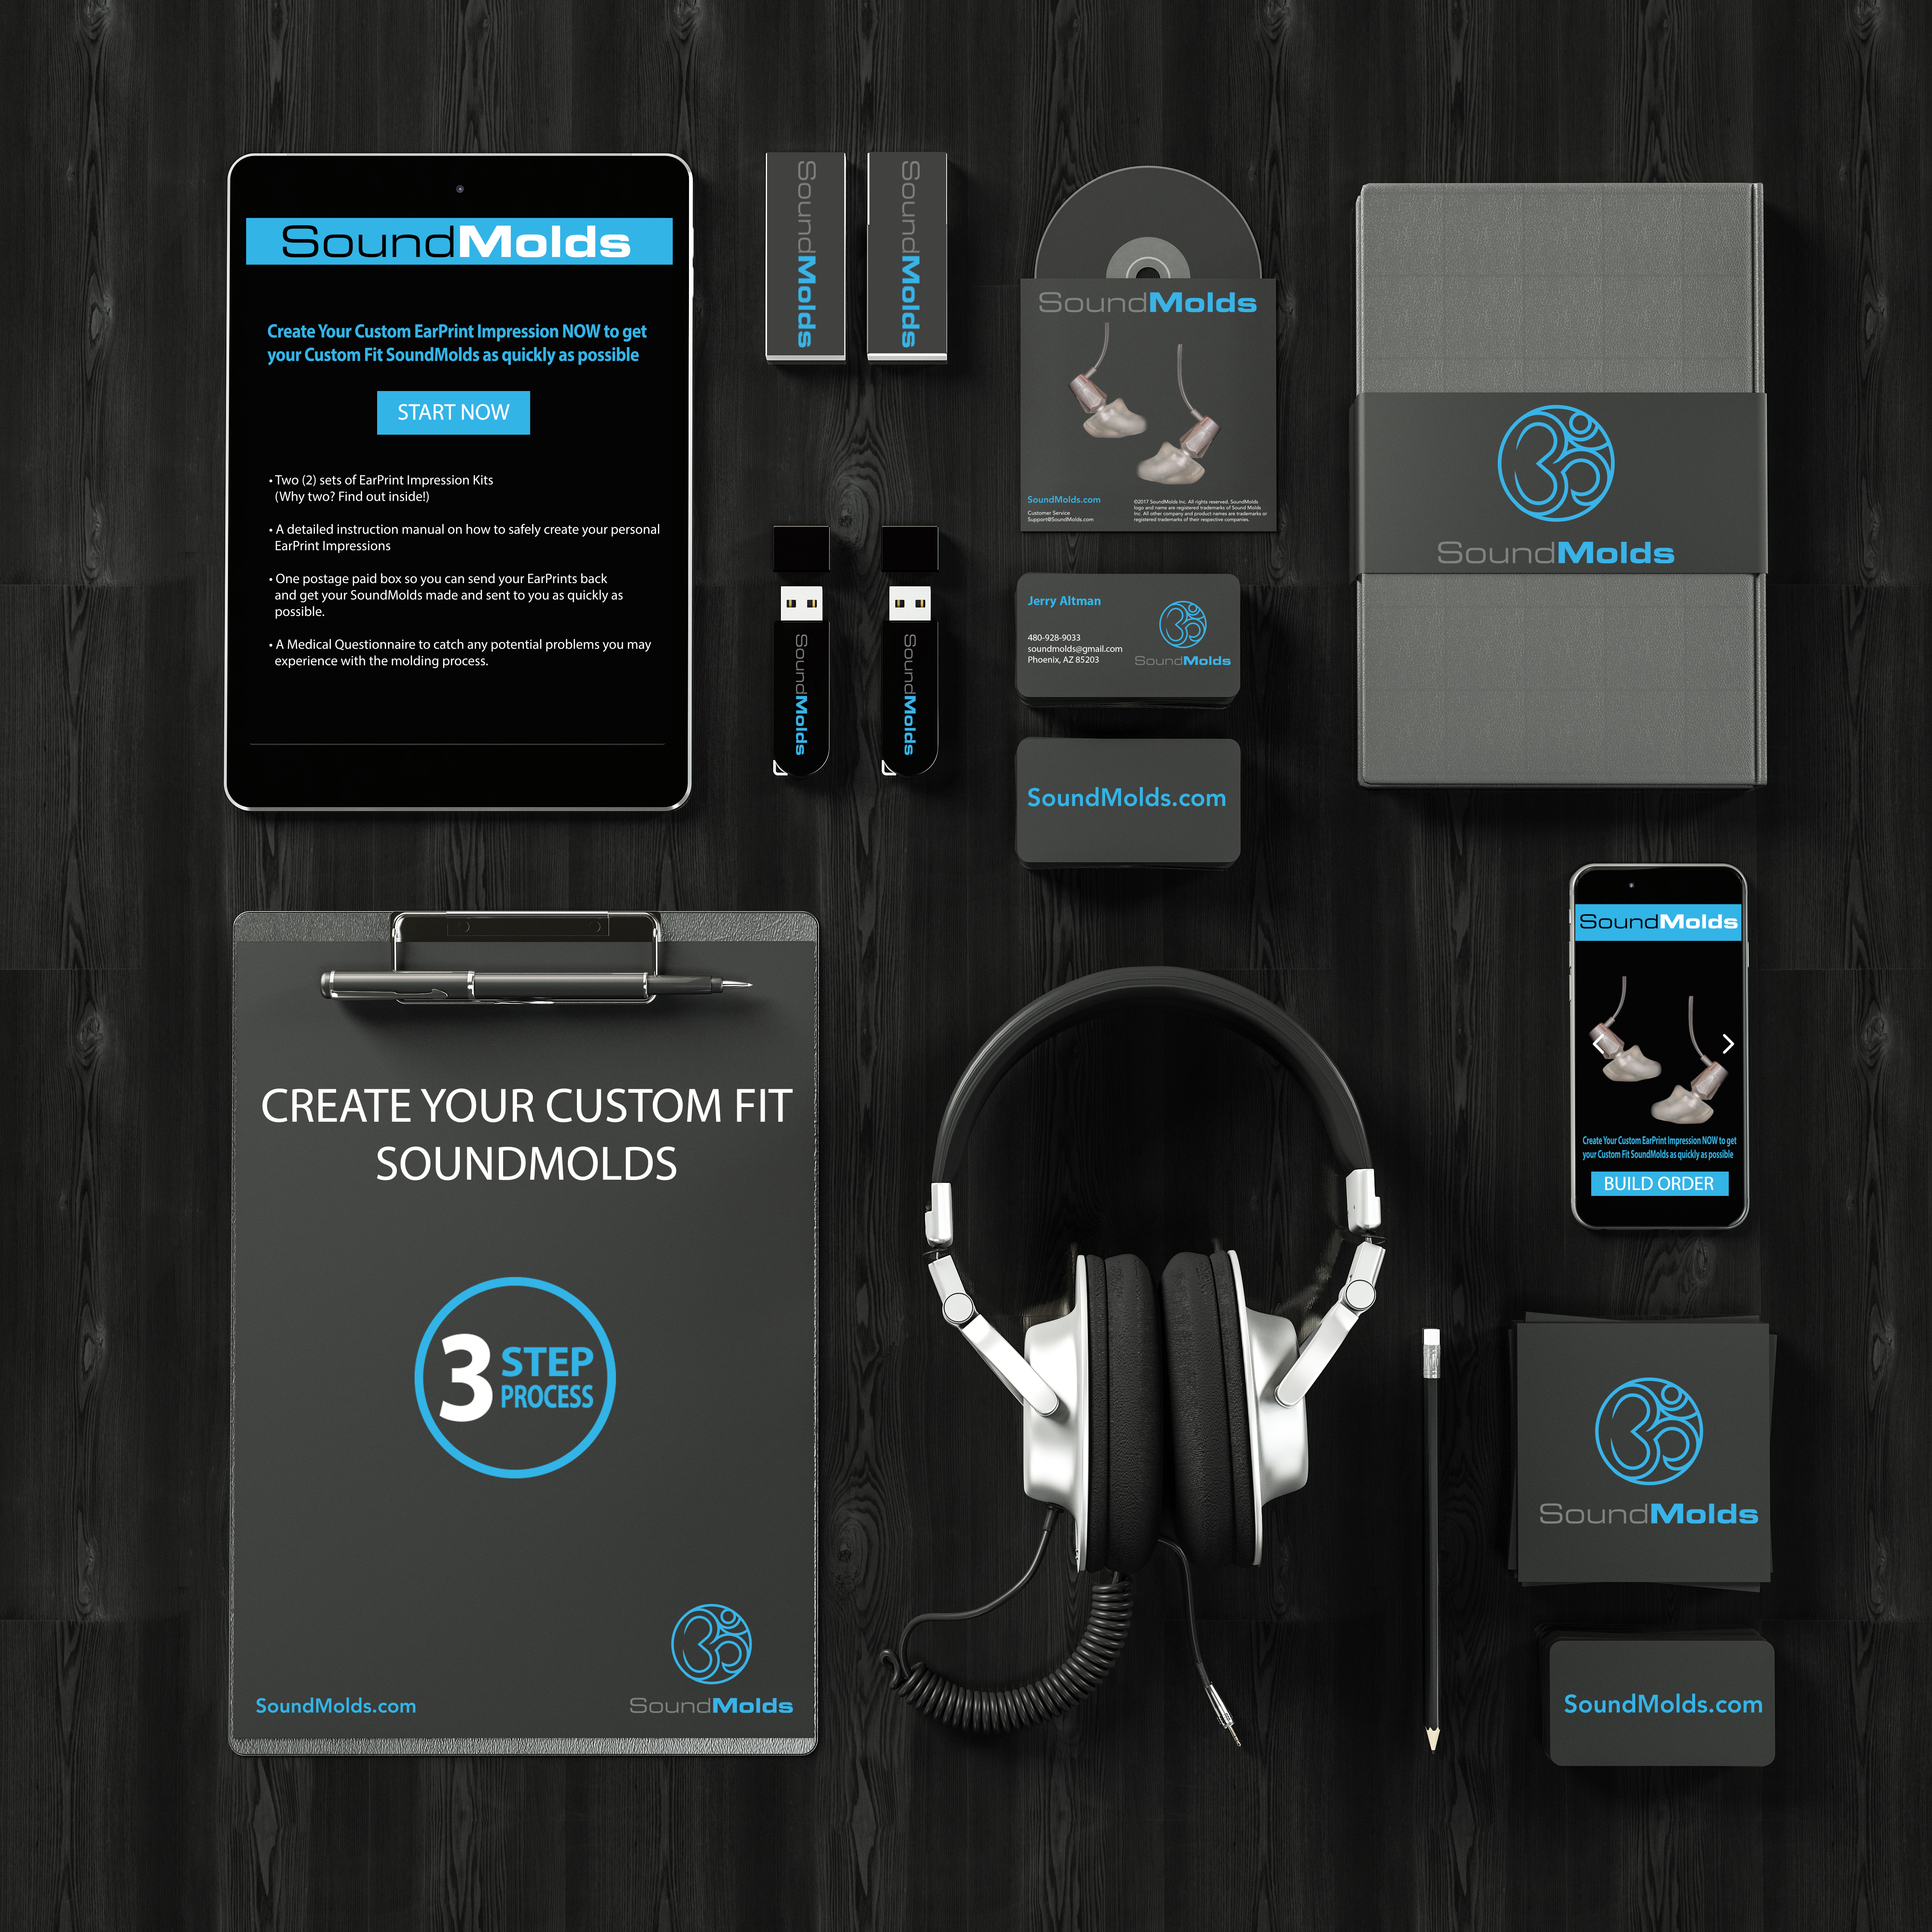 Avadium Design creating app design, product design for consumer products, industrial design of parts